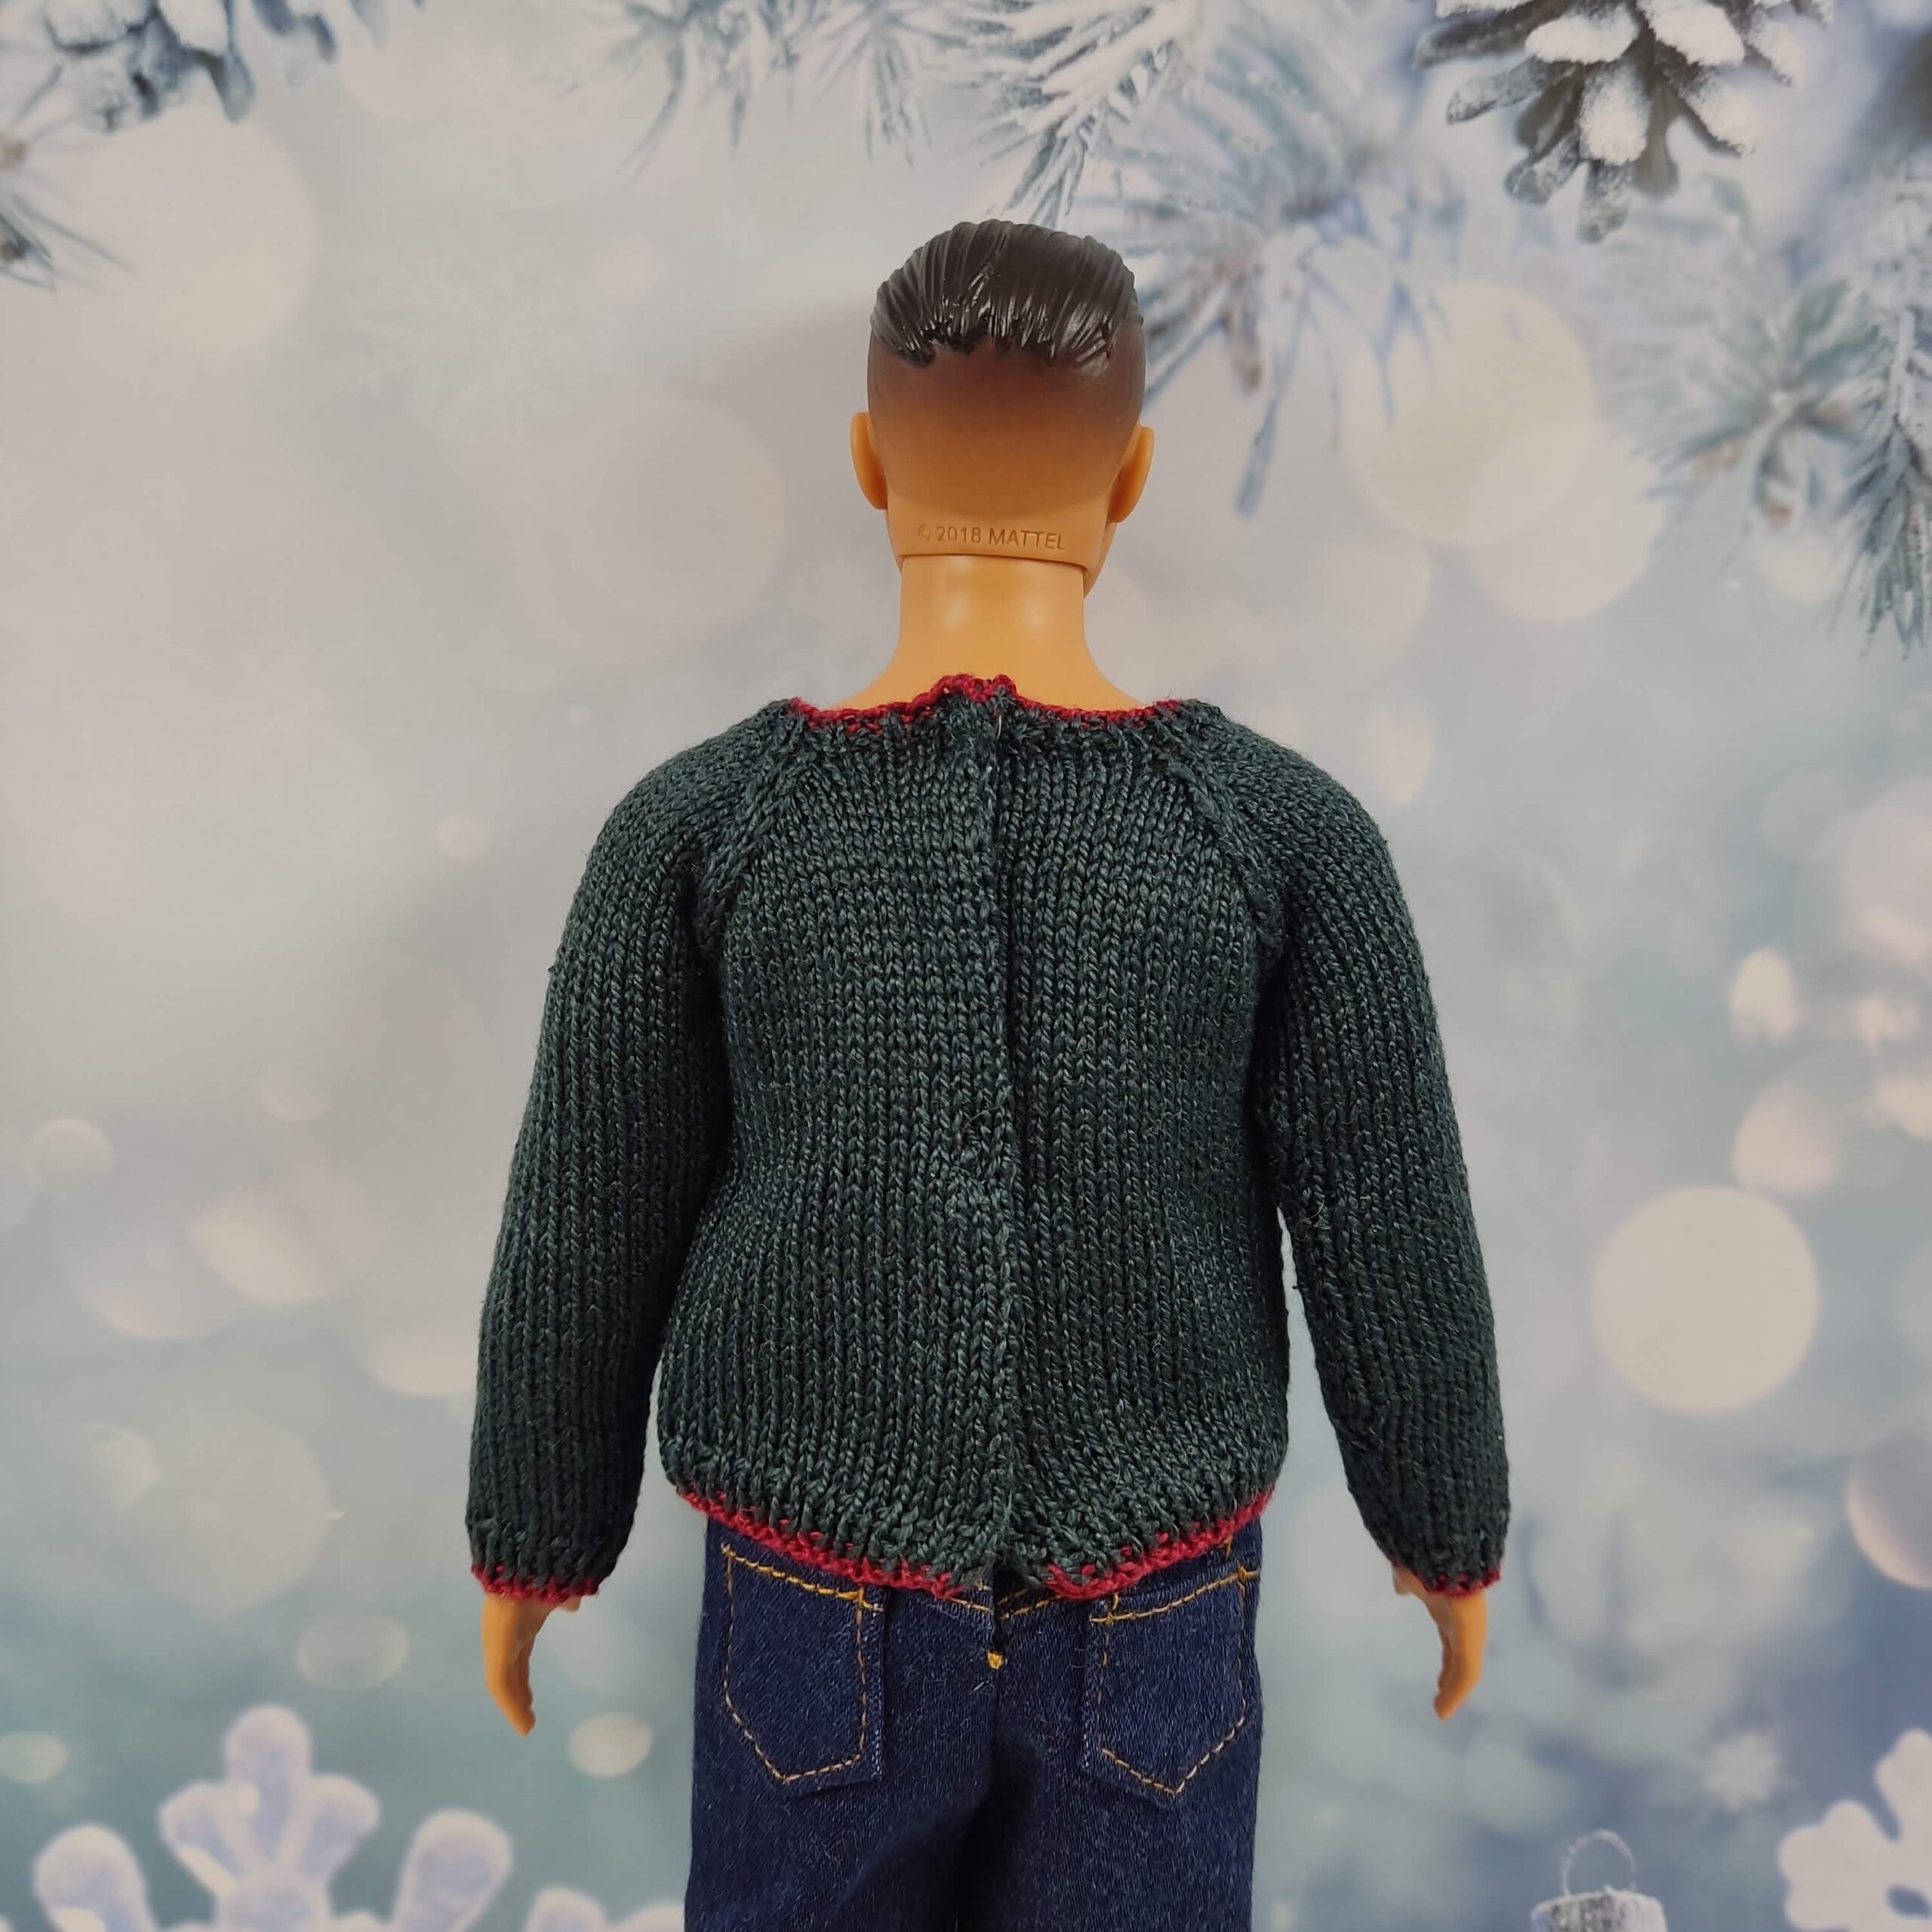 Ken doll clothes, Ken Christmas sweater